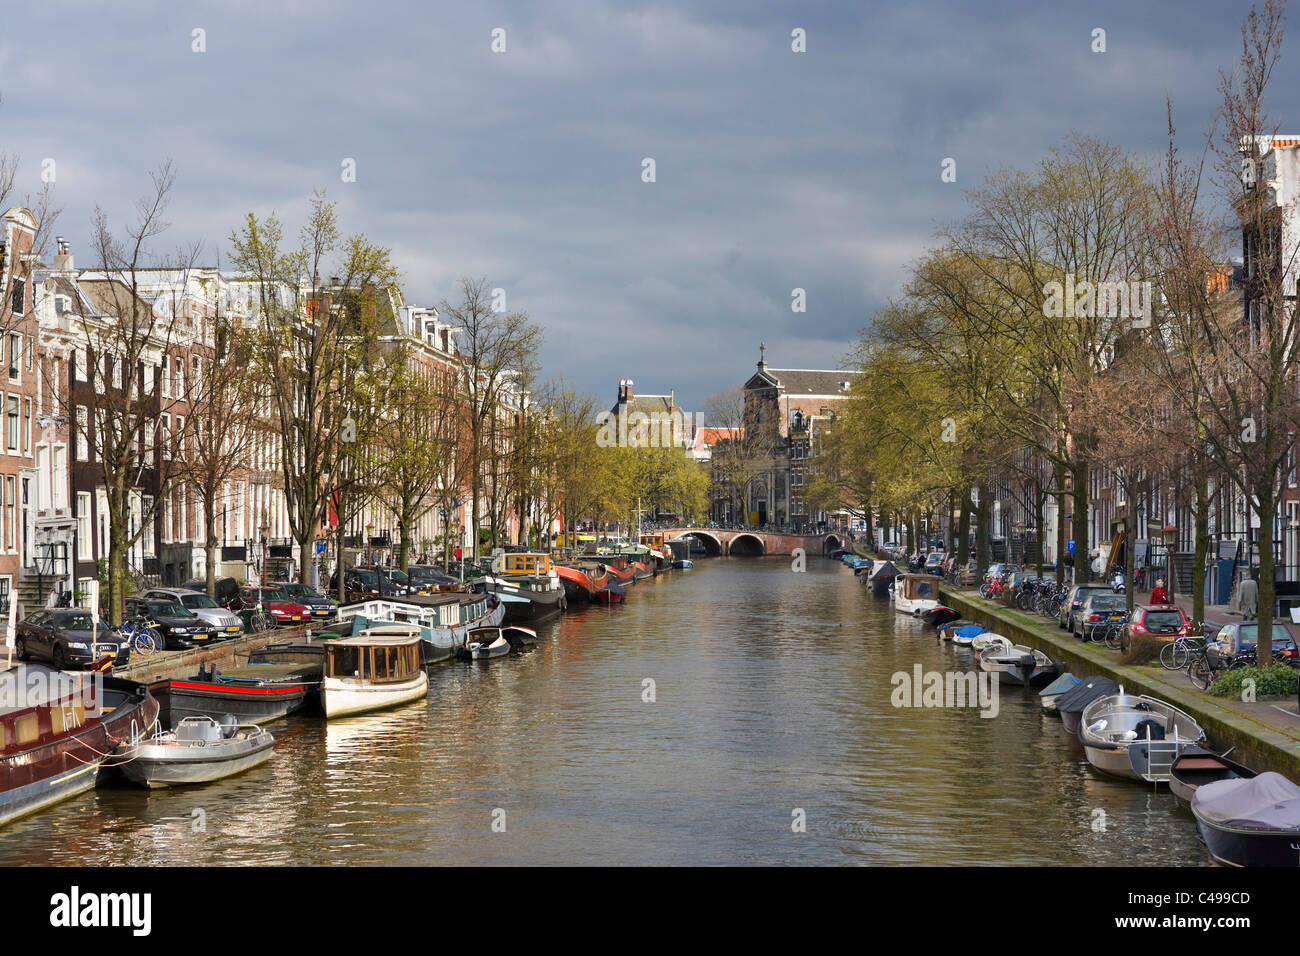 Häuser und Boote an einem Kanal im frühen Frühjahr oder späten Winter, Prinsengracht, Grachtengordel Süden, Amsterdam, Niederlande Stockfoto